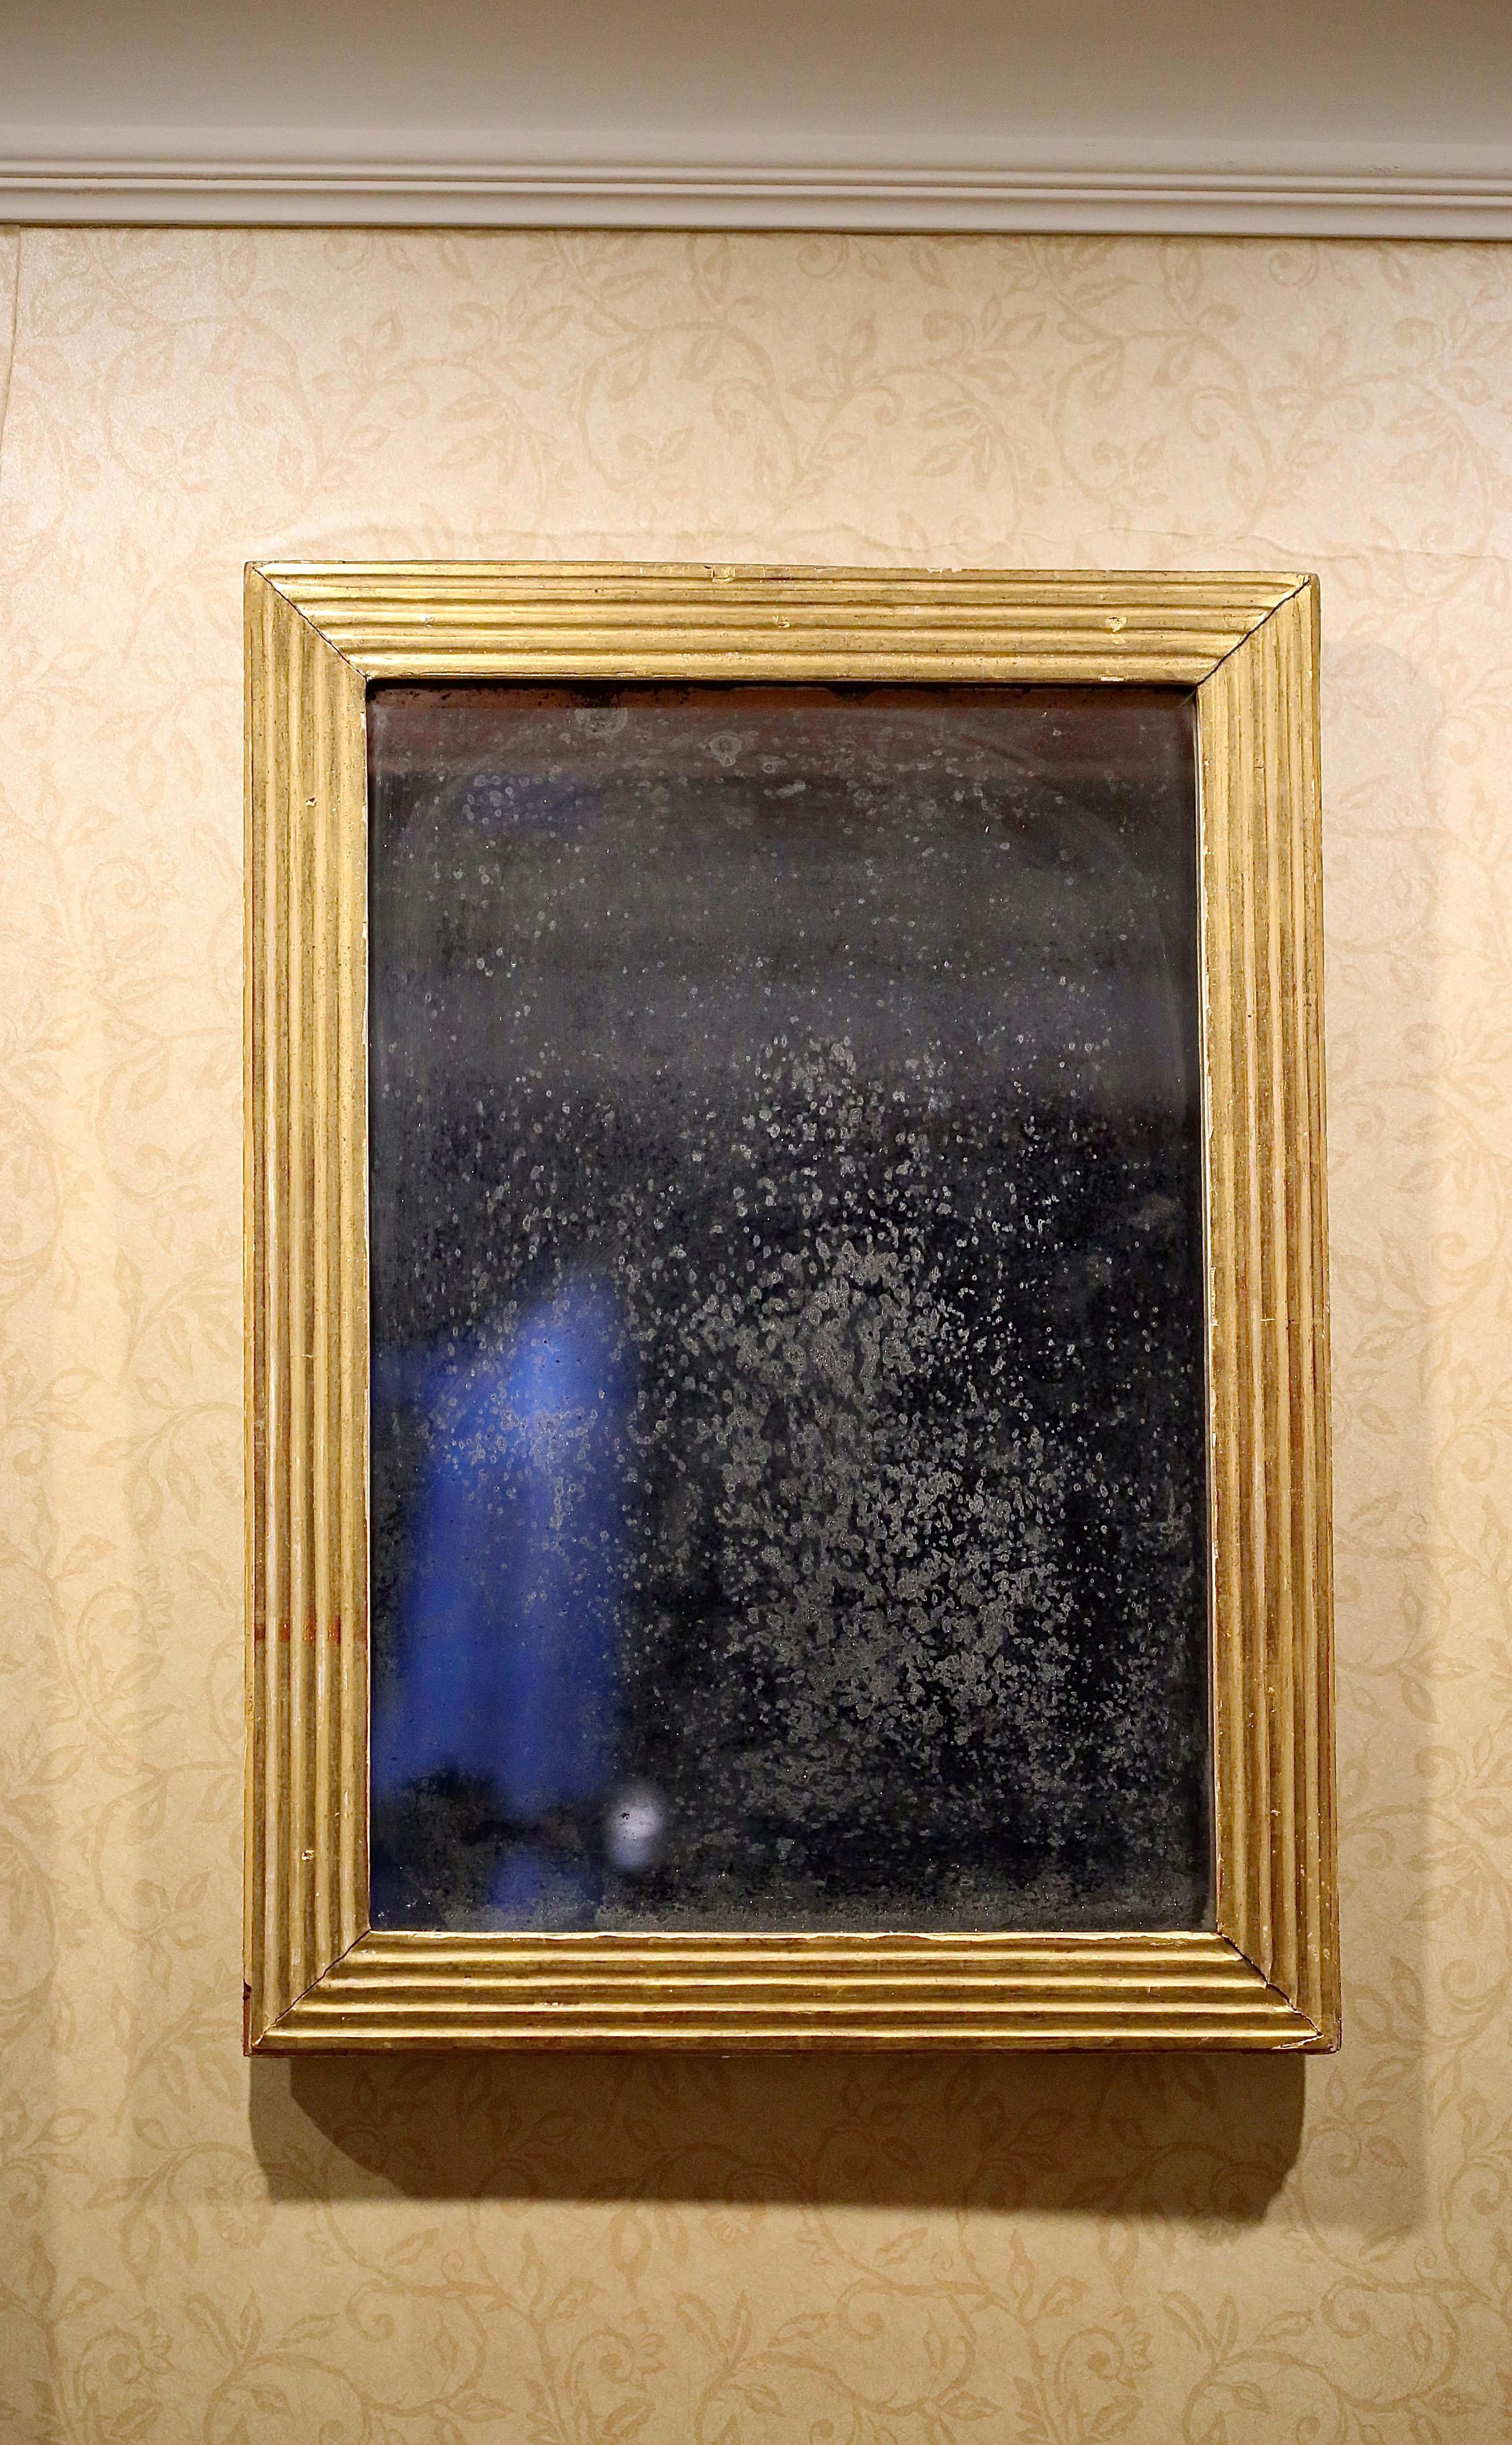 Französischer neoklassizistischer Spiegel aus Giltwood, Ende 18. - Anfang 19.

MIROIR D'EPOQUE NEOCLASSIQUE
FIN DU XVIIIEME-DEBUT DU XIXEME SIECLE

Ursprünglich befand sich dieser Spiegel im Inneren der Abtei von Royaumont (PALAIS ABBATIAL DE